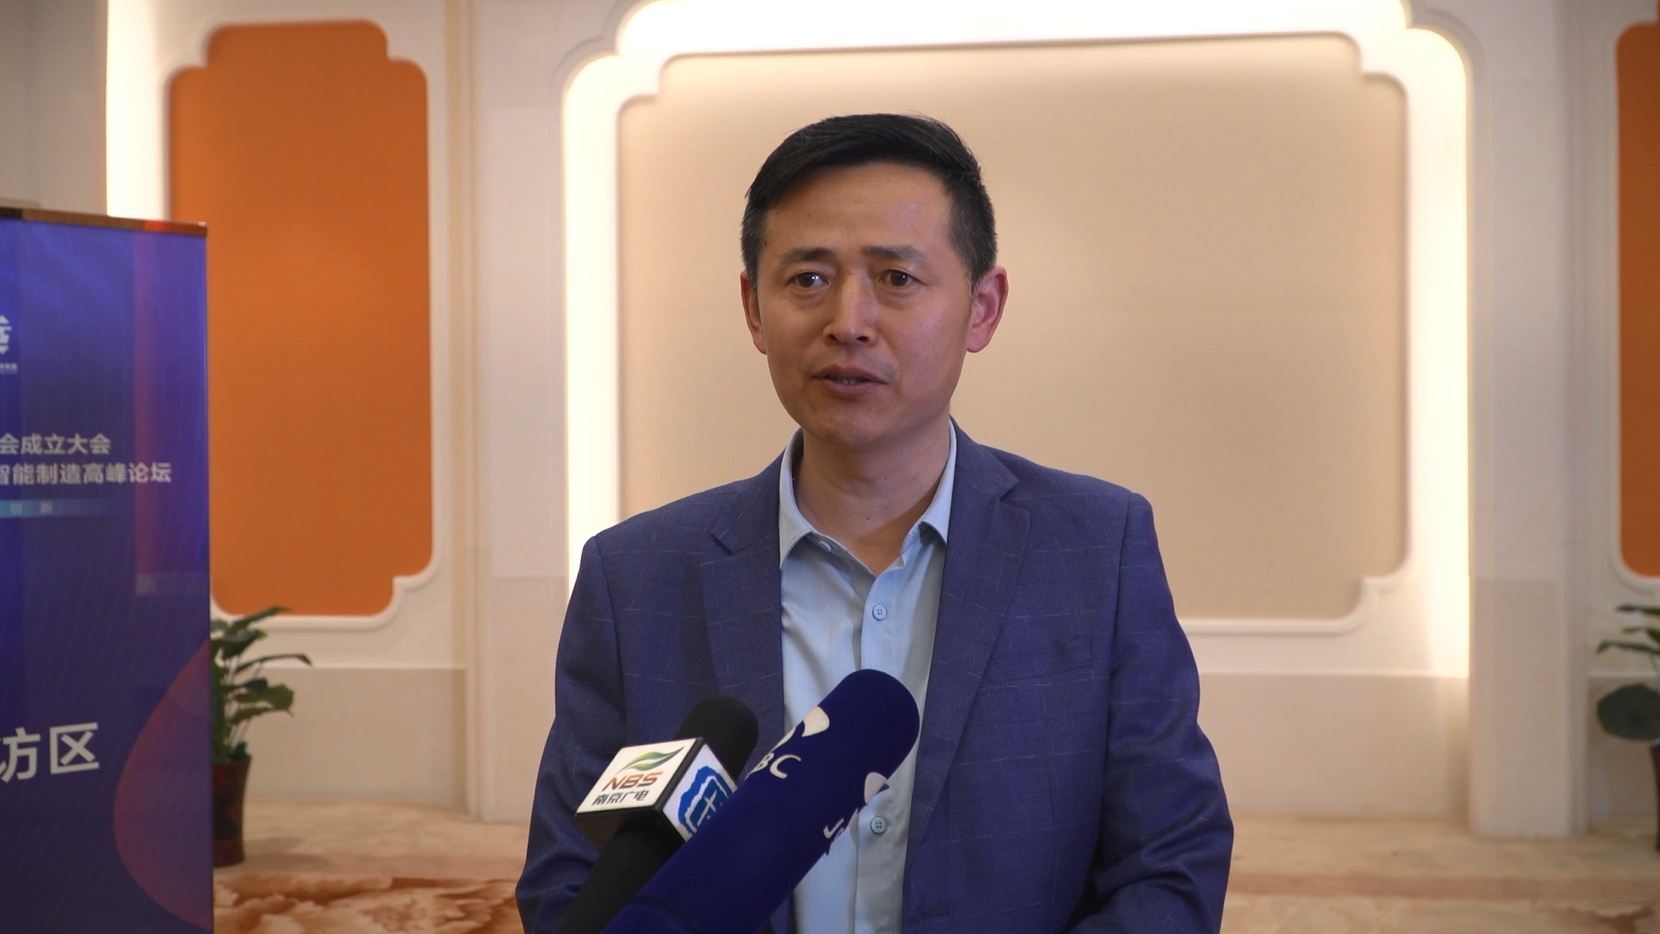 江苏省五金制品行业协会常务副会长汤伟东谈智能制造对环保节能的影响